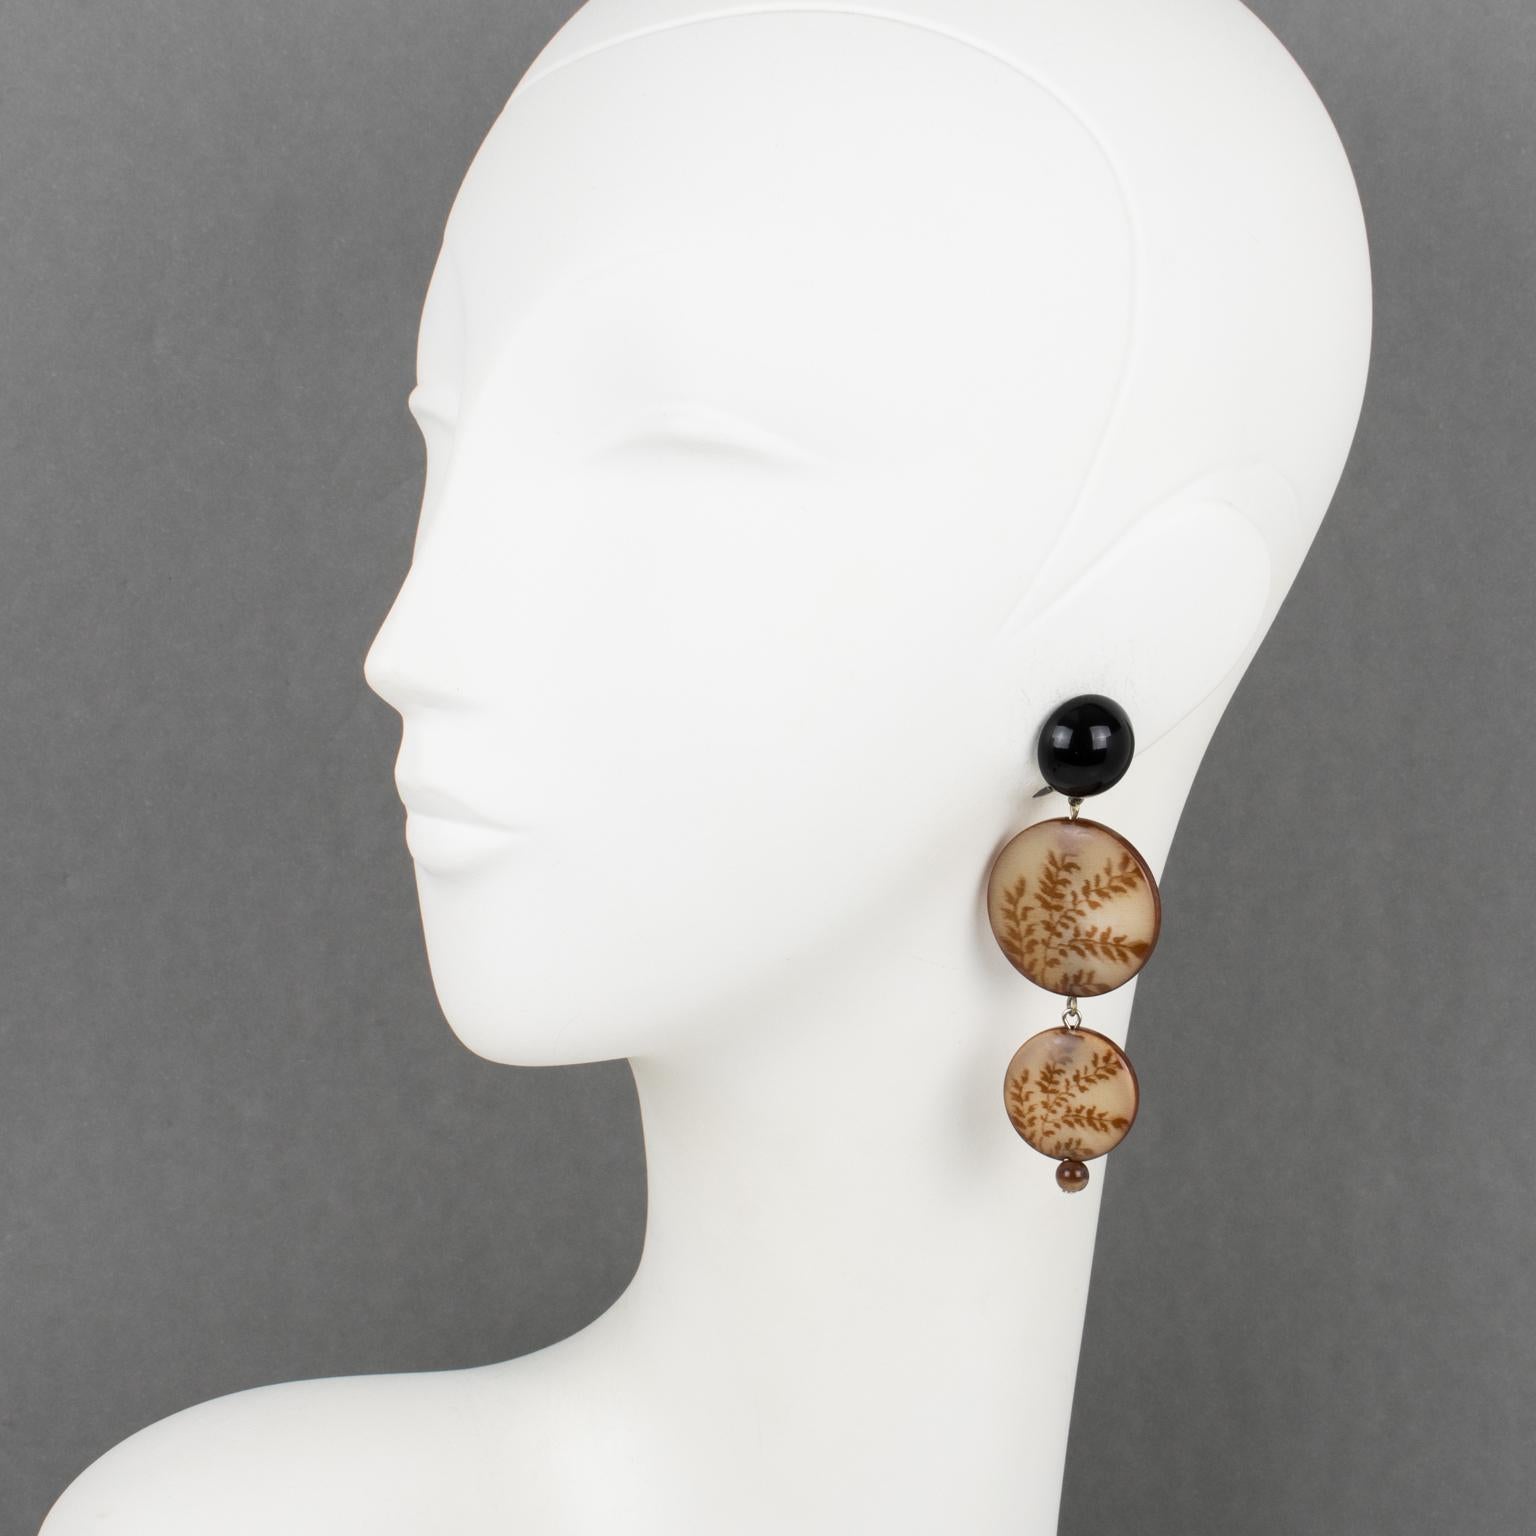 Angela Caputi hat diese raffinierten, in Italien gefertigten Ohrringe mit Clipverschluss entworfen. Die Stücke weisen einen schwarzen Kontrast mit brauner, gelbbrauner Farbe auf. Die baumelnden, abgestuften Scheiben haben eine Gravur im Farndesign,